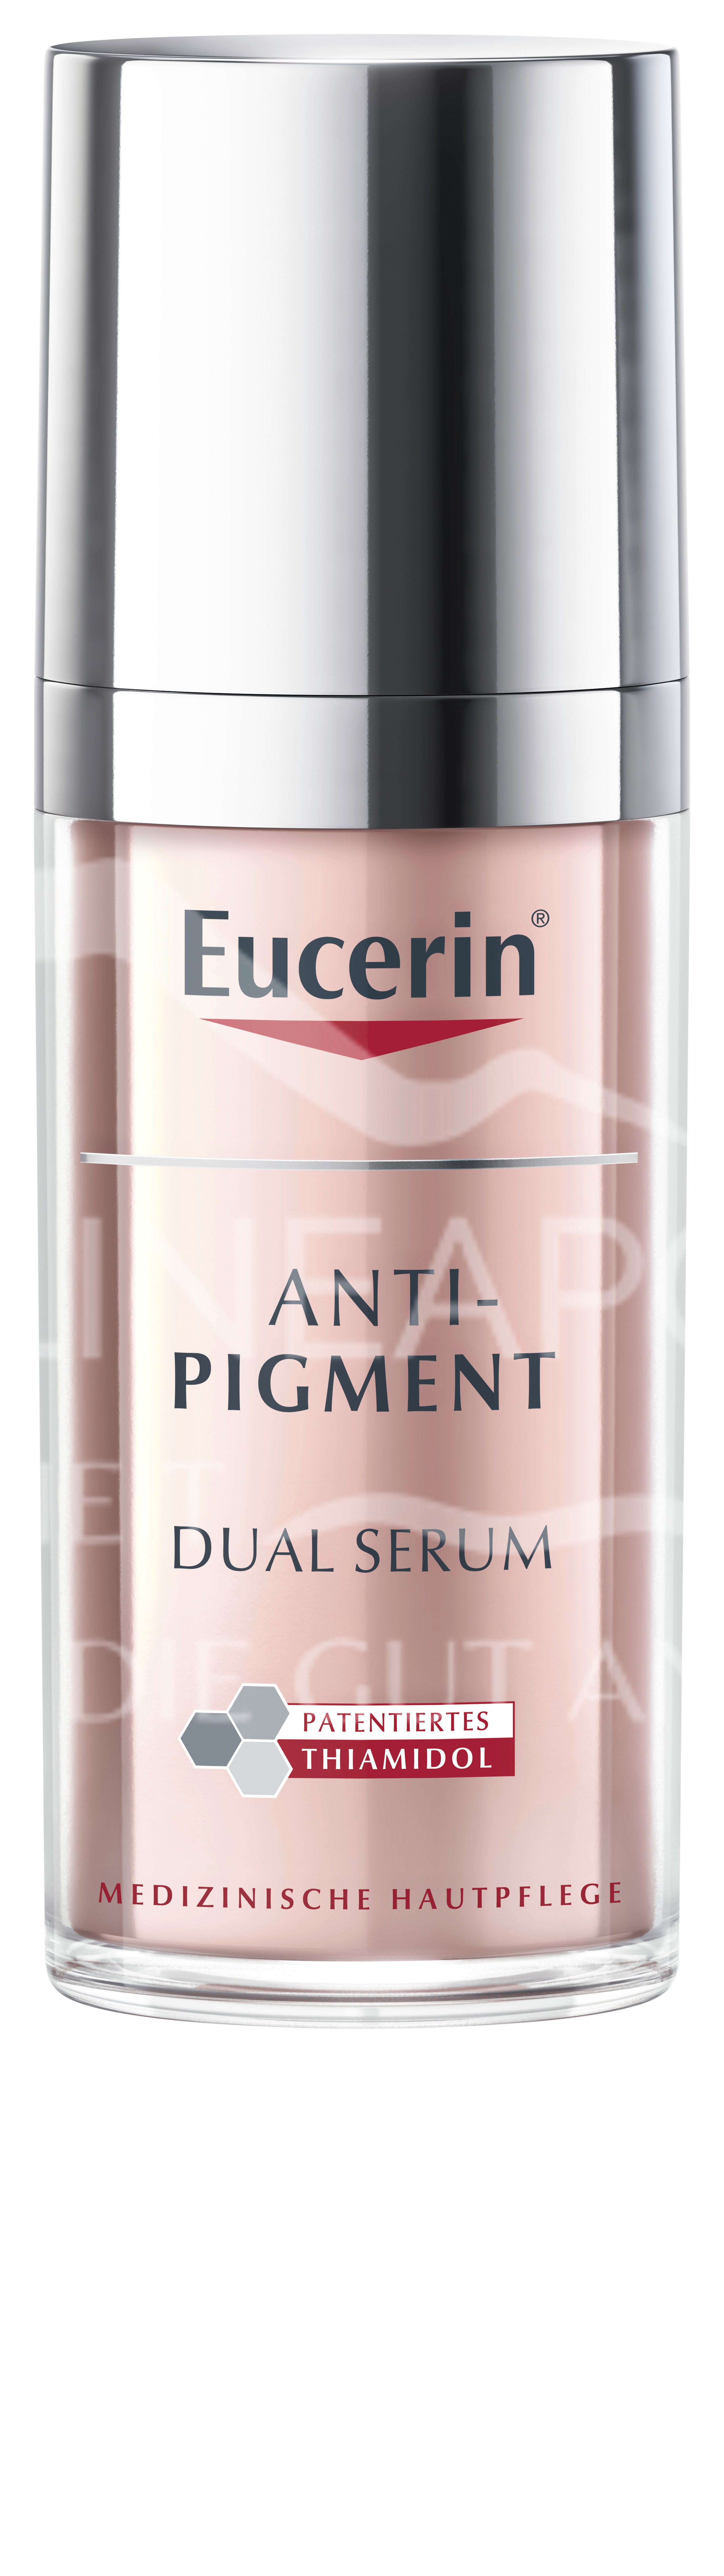 Eucerin® ANTI-PIGMENT Dual Serum